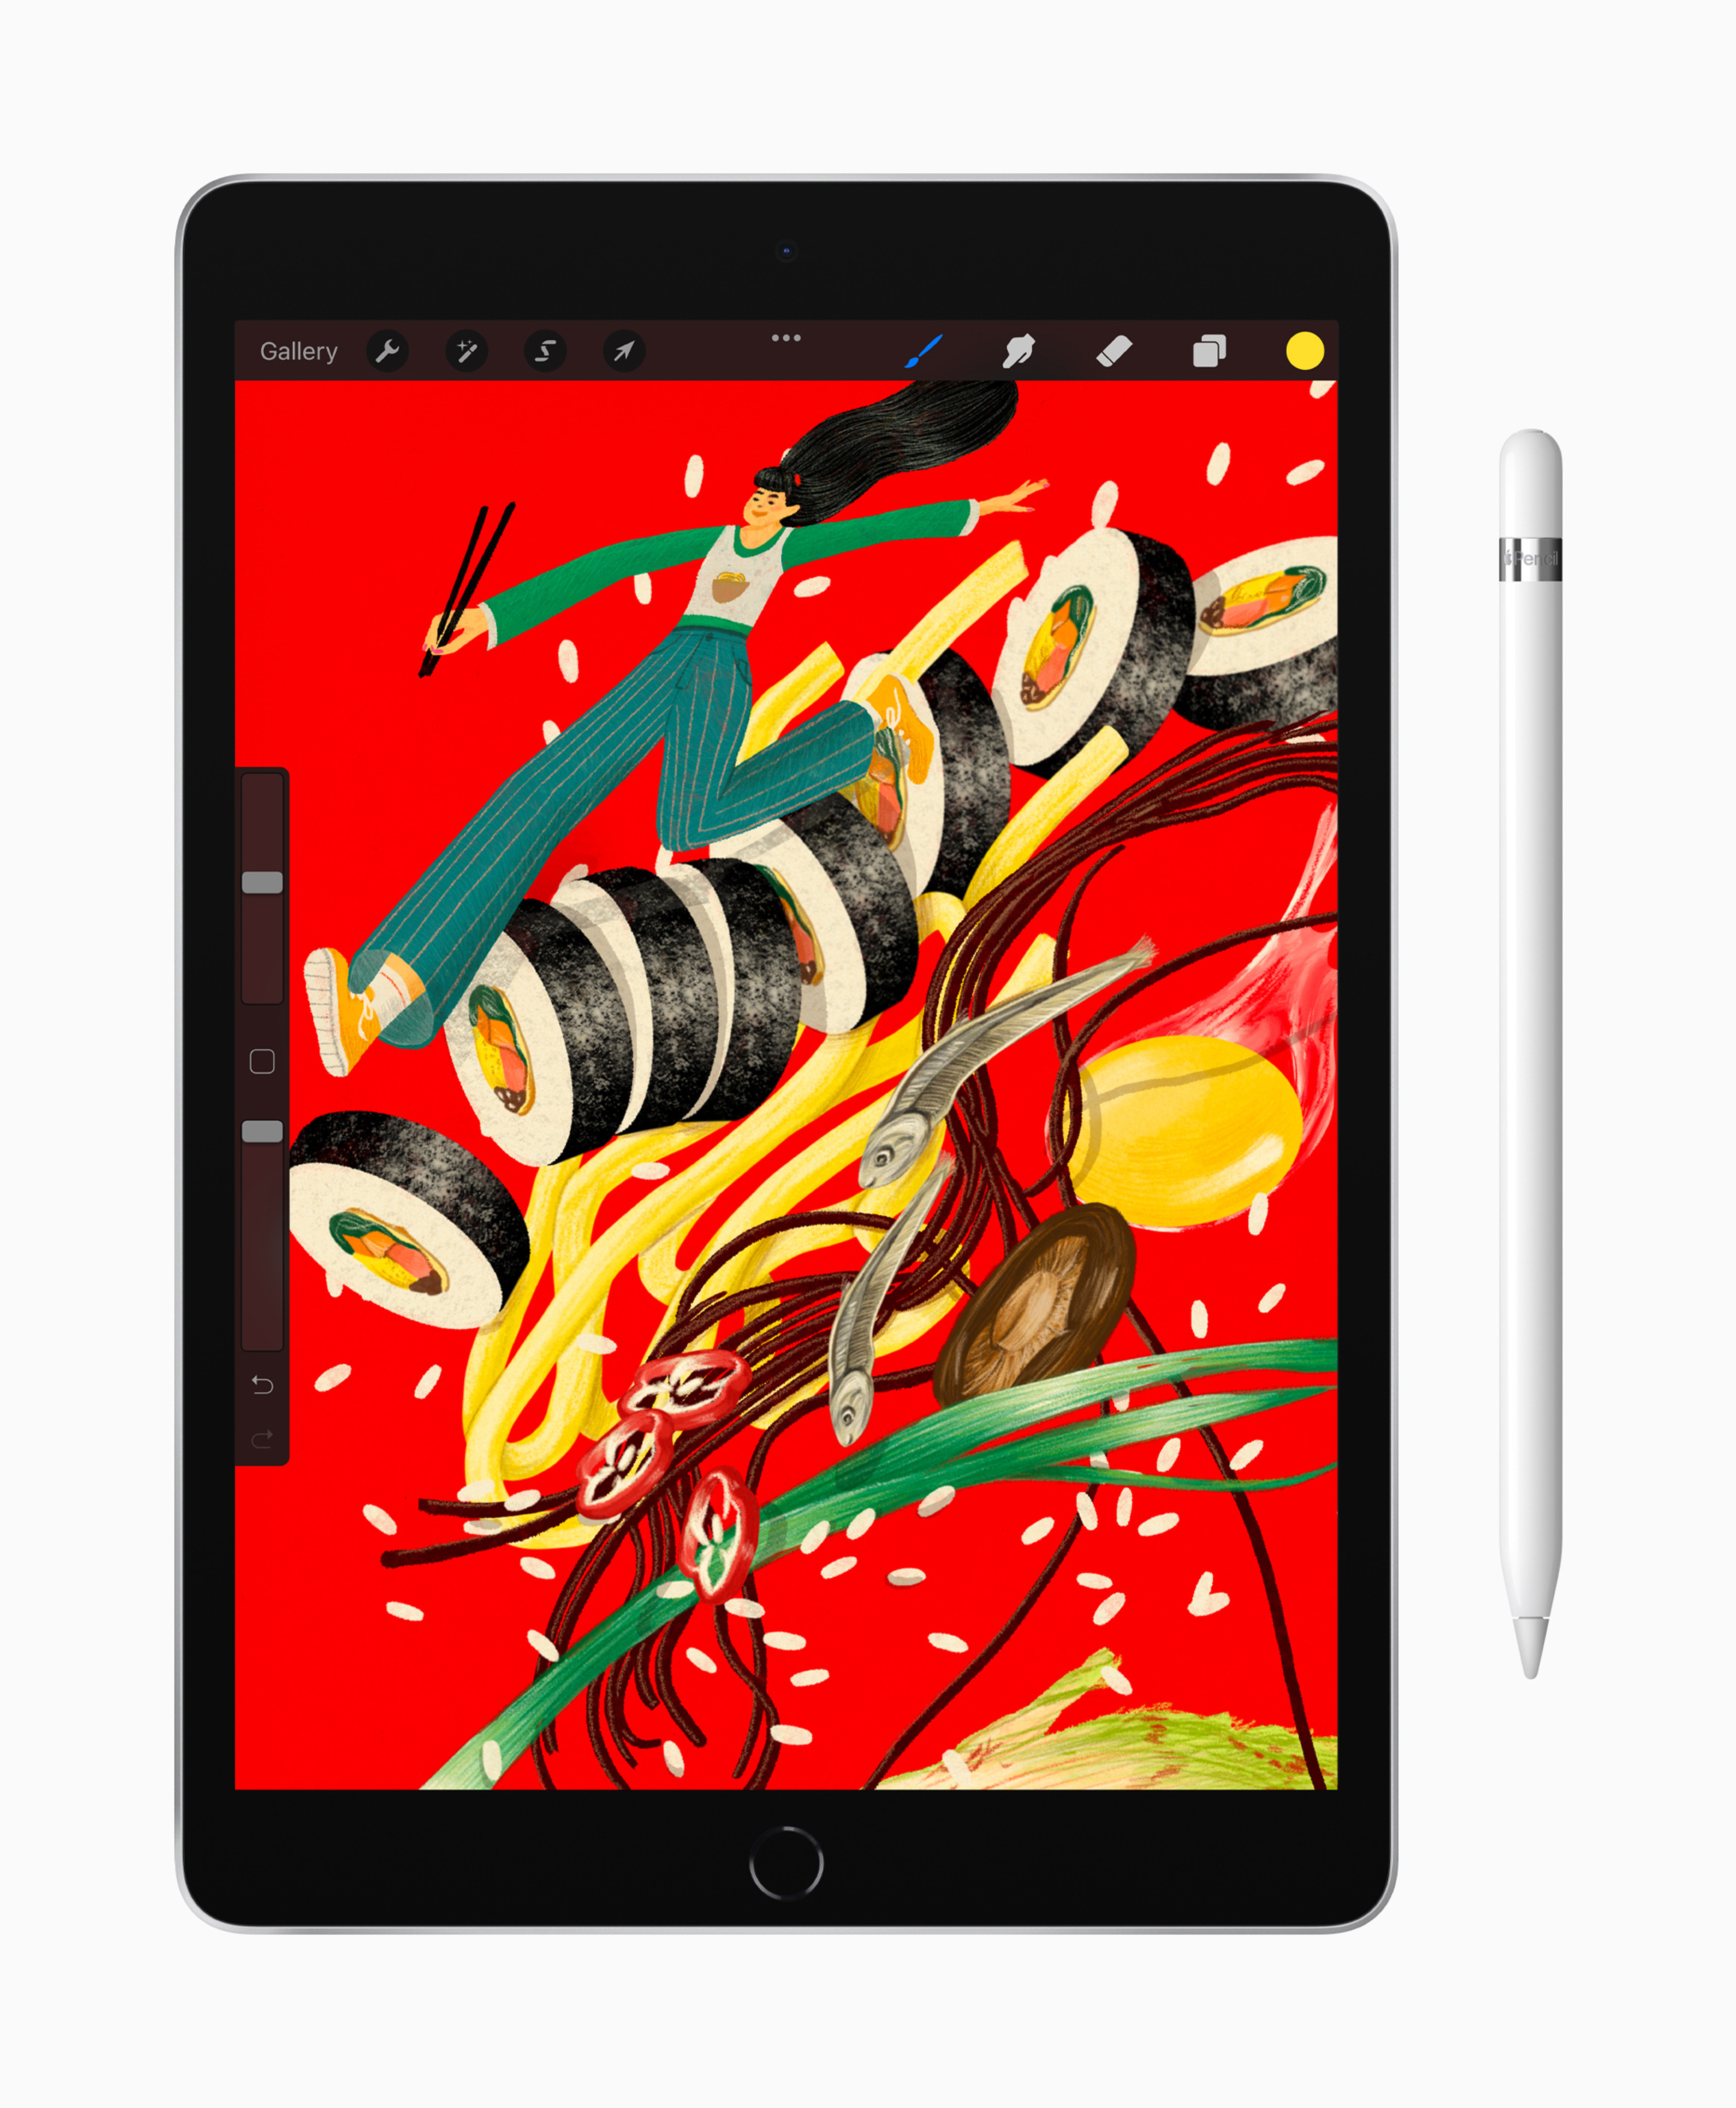 Apple iPad 第9世代 A13 Bionic 10.2型 Wi-Fi … smcint.com